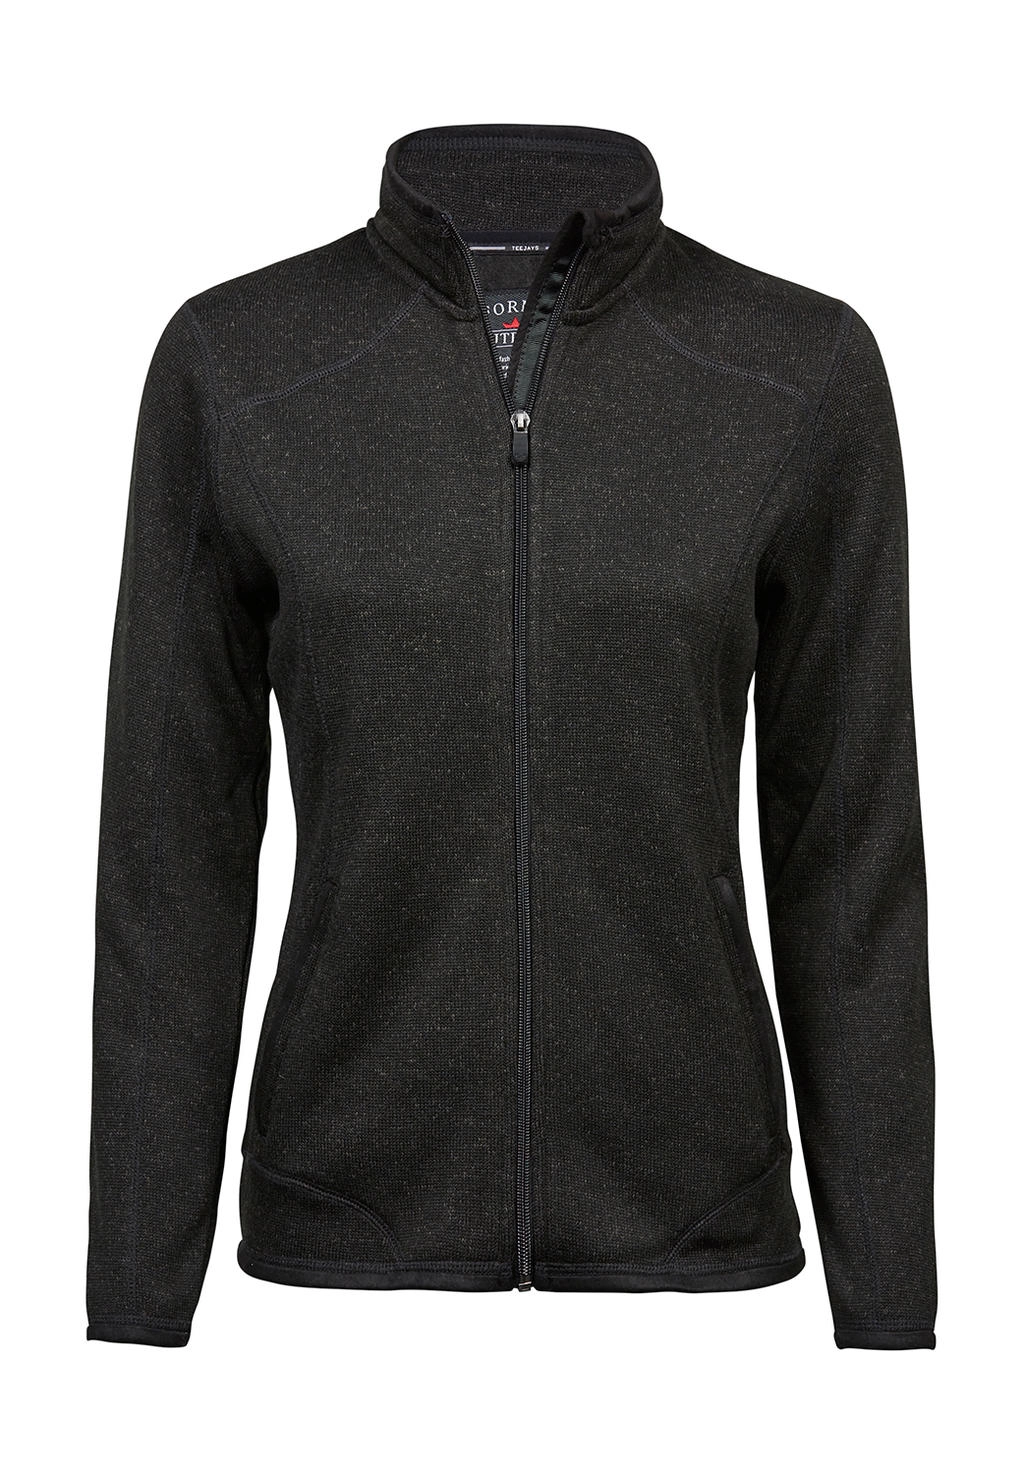 Ladies` Outdoor Fleece Jacket zum Besticken und Bedrucken in der Farbe Black mit Ihren Logo, Schriftzug oder Motiv.